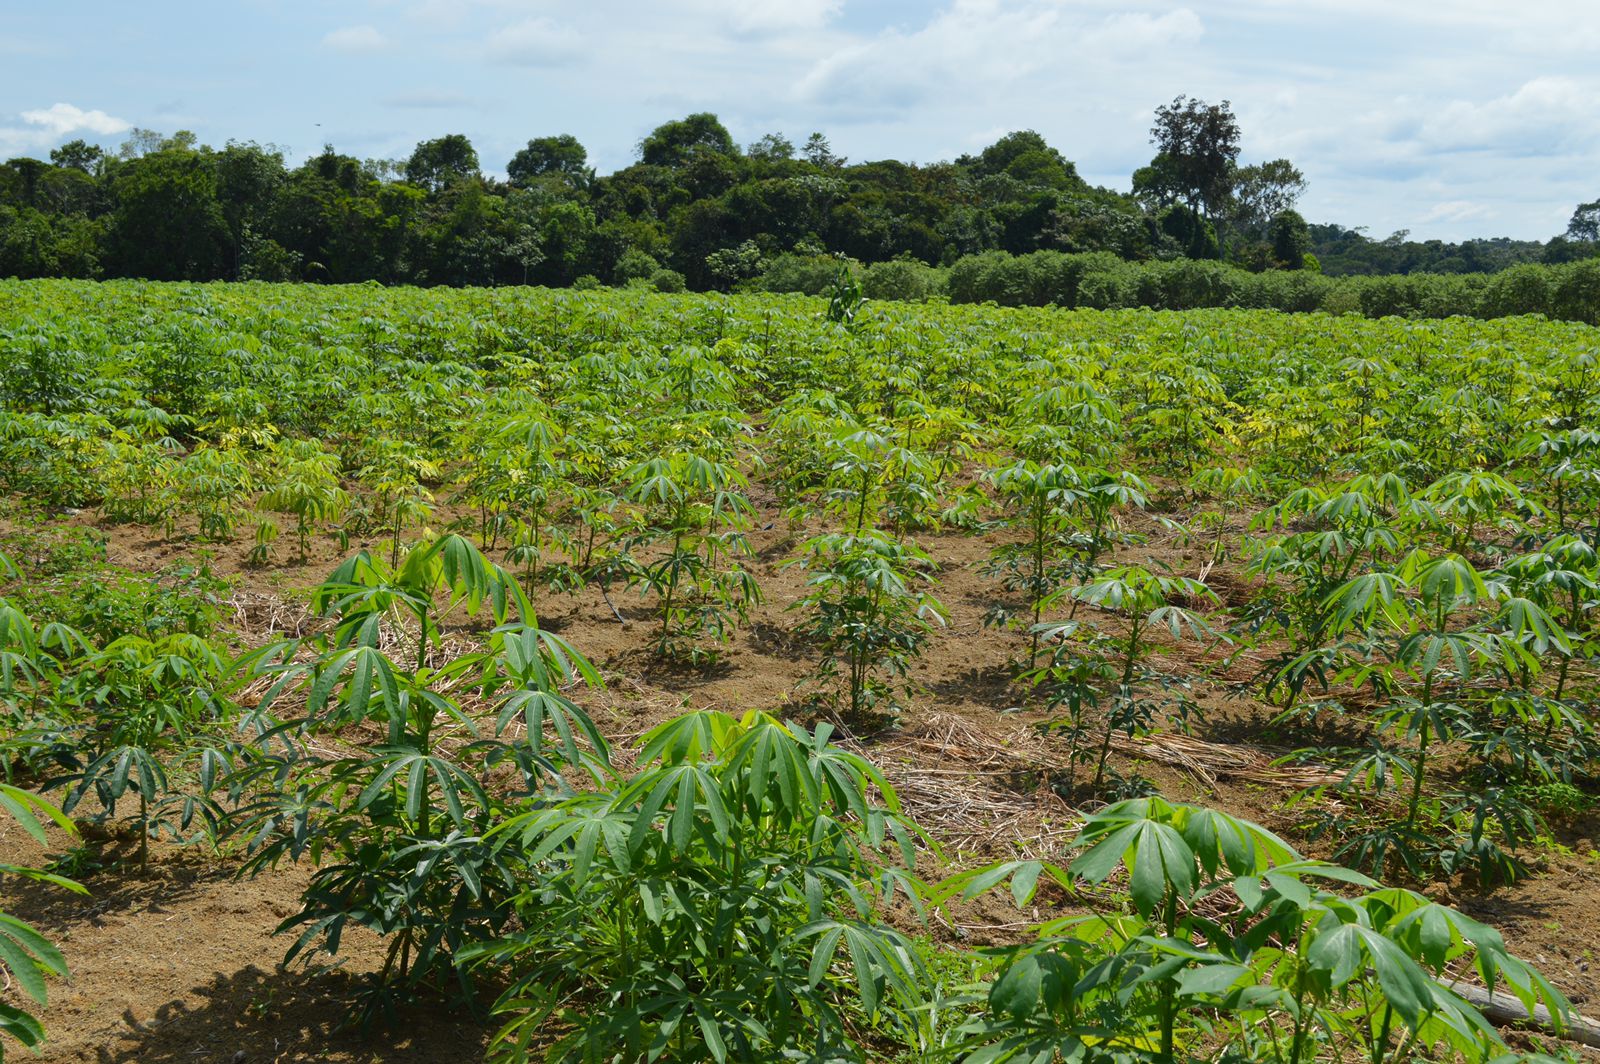 Agricultores apelam por incentivos para retomada do cultivo da mandioca em Feira, diz vereador